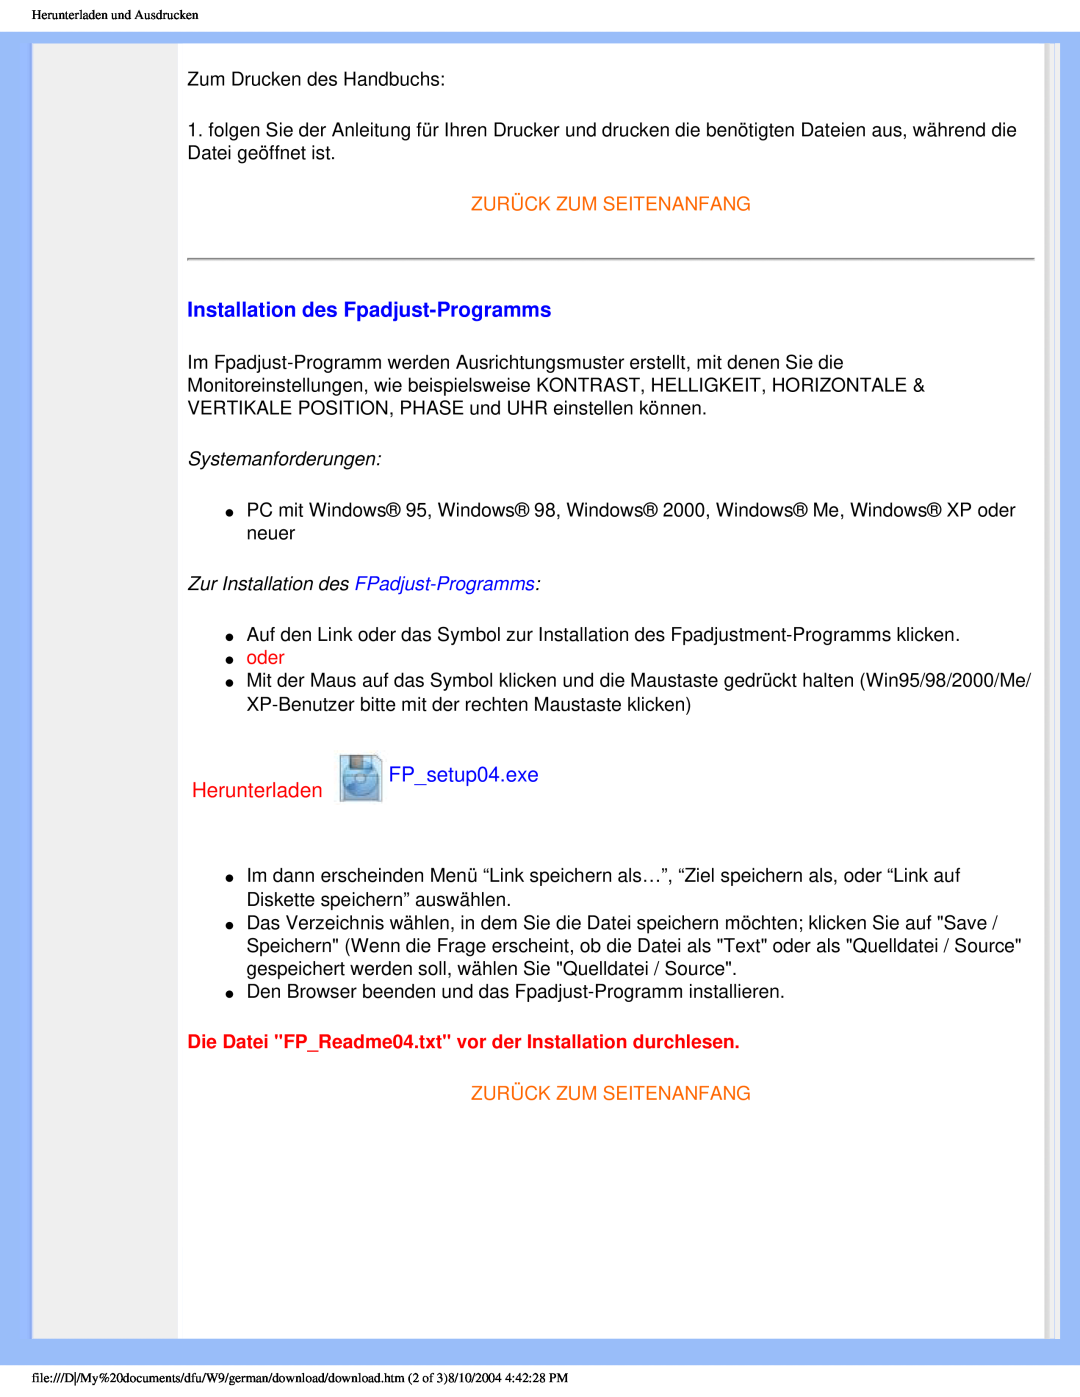 Philips 190S5 user manual Installation des Fpadjust-Programms, Herunterladen FP_setup04.exe, Zurück Zum Seitenanfang 